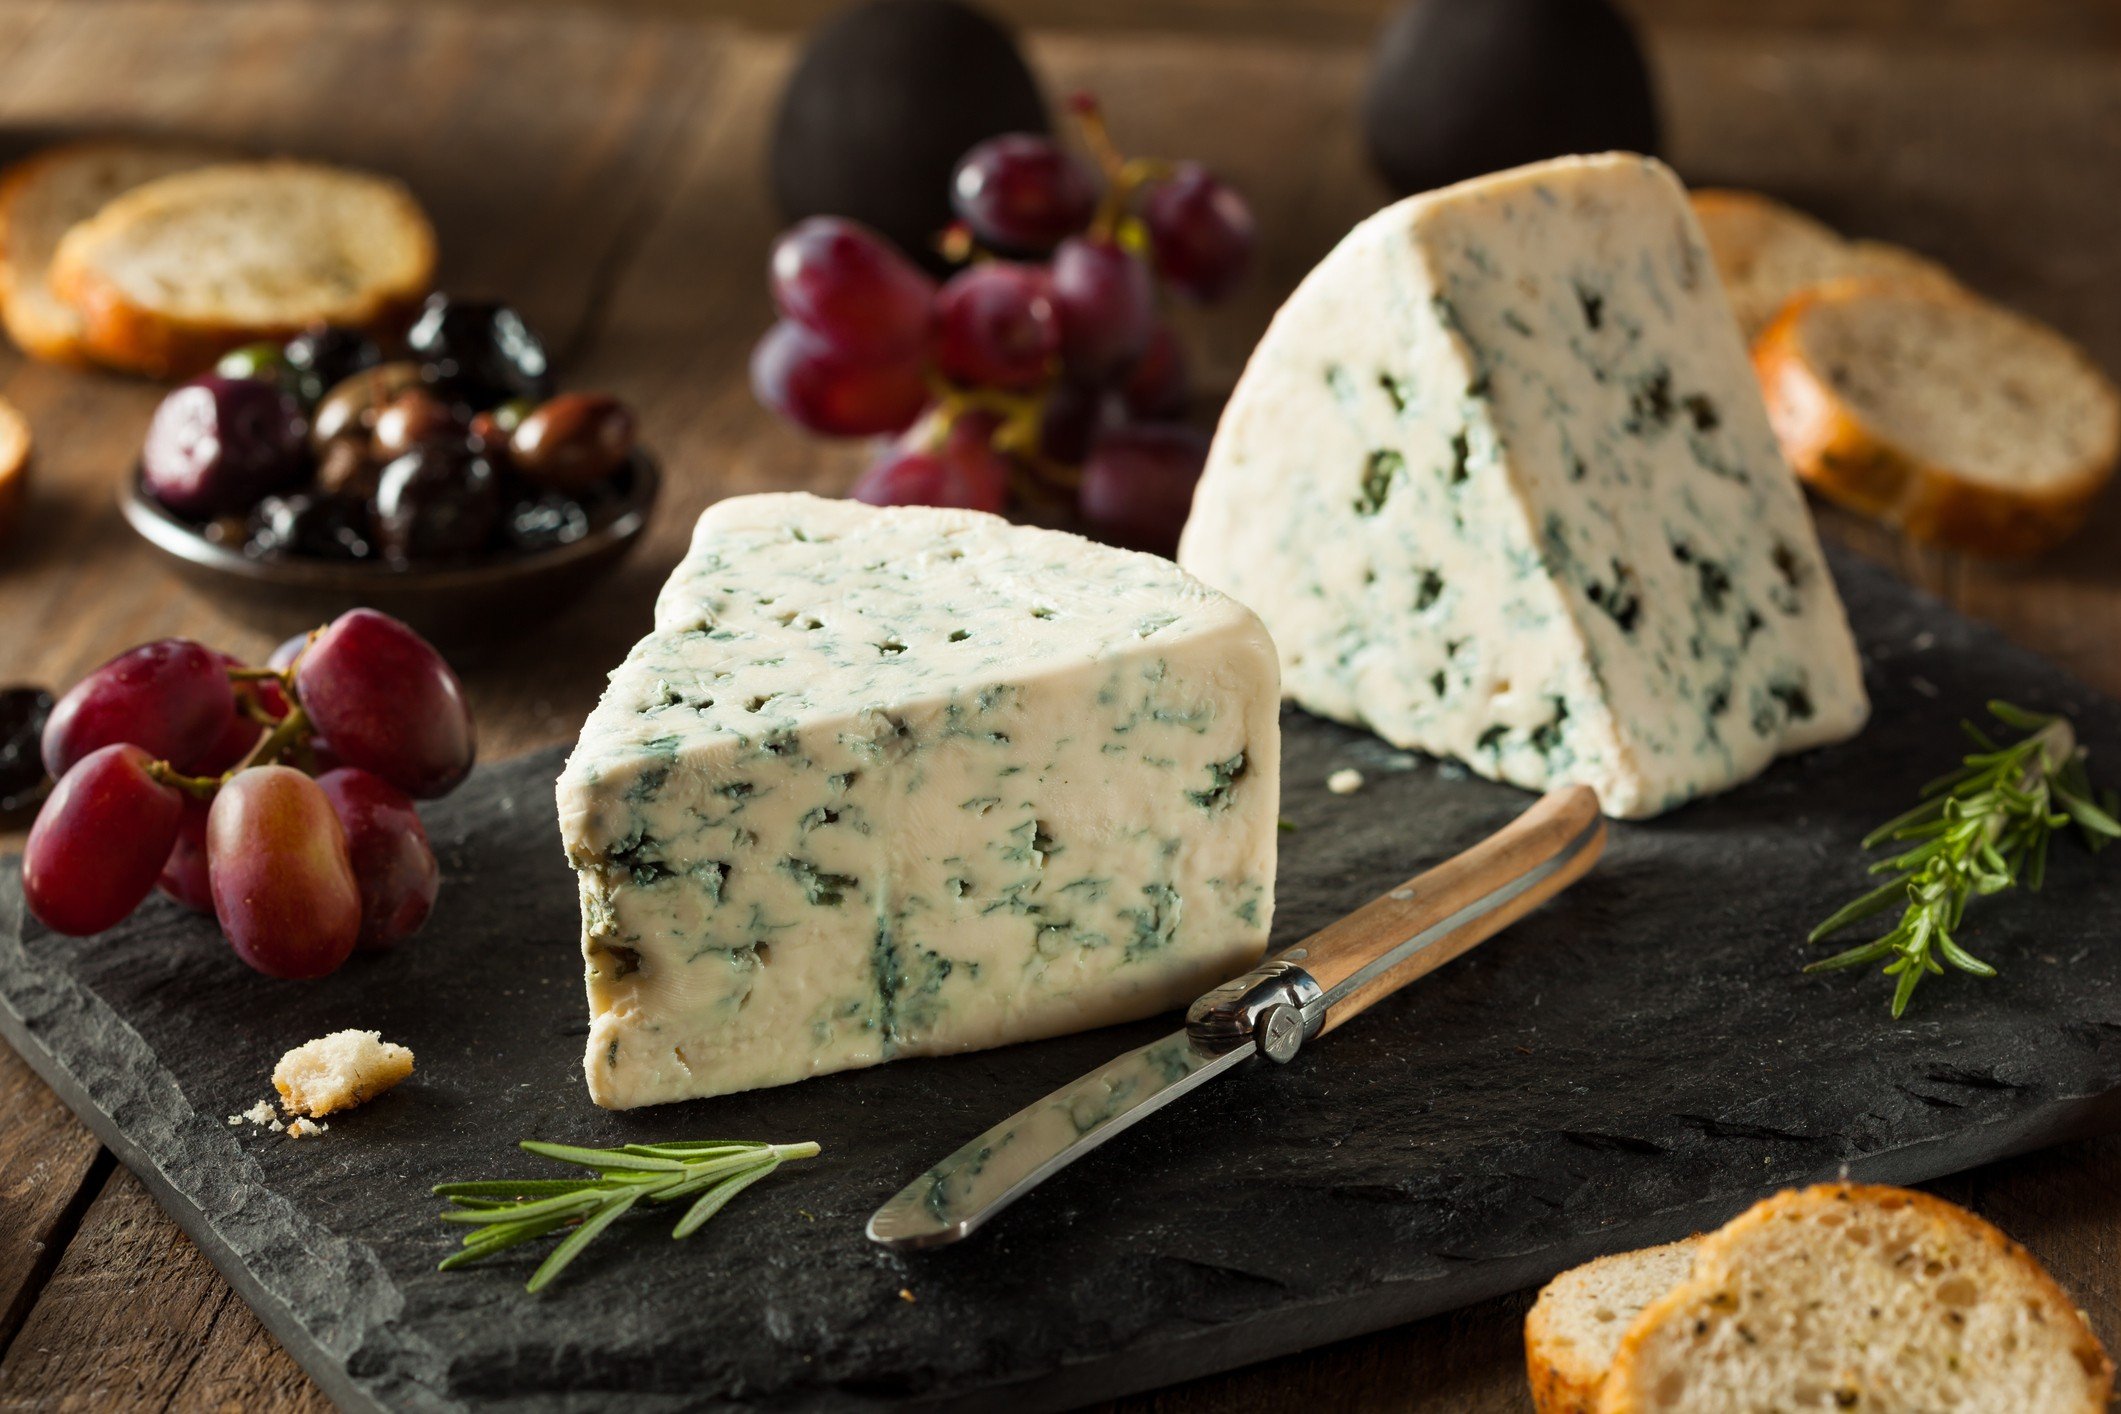 Почему сыр с плесенью